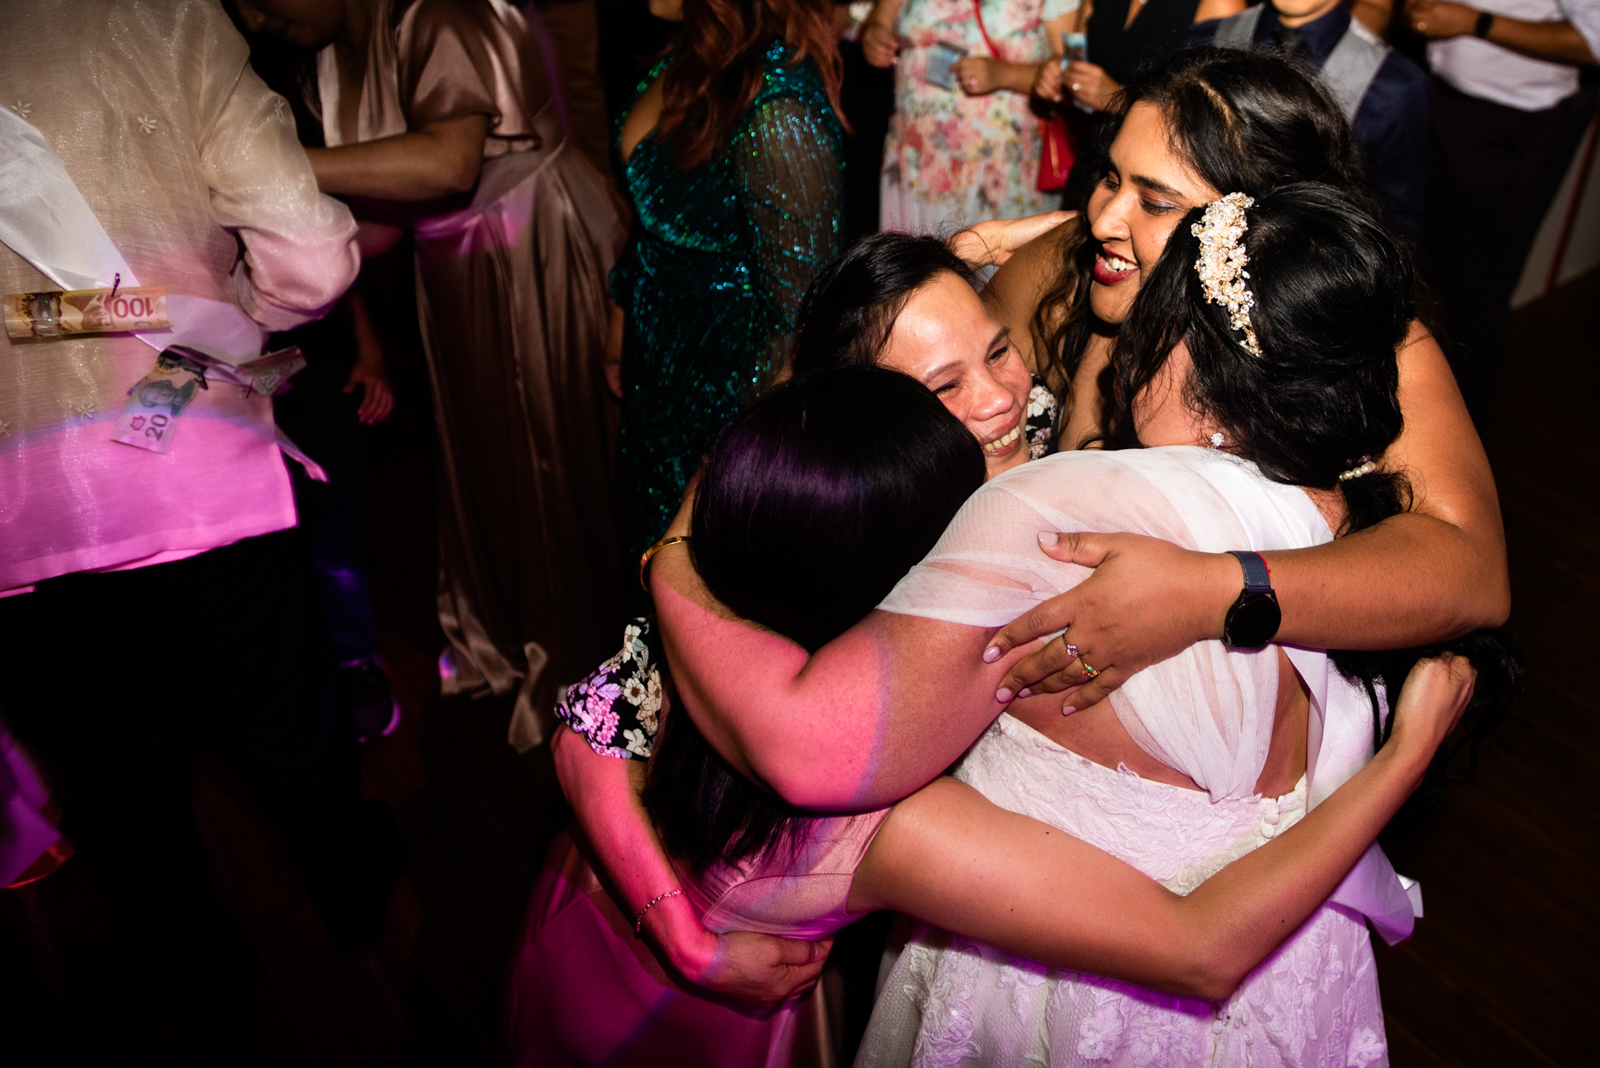 the bride is hugging her friends on the wedding dancing floor